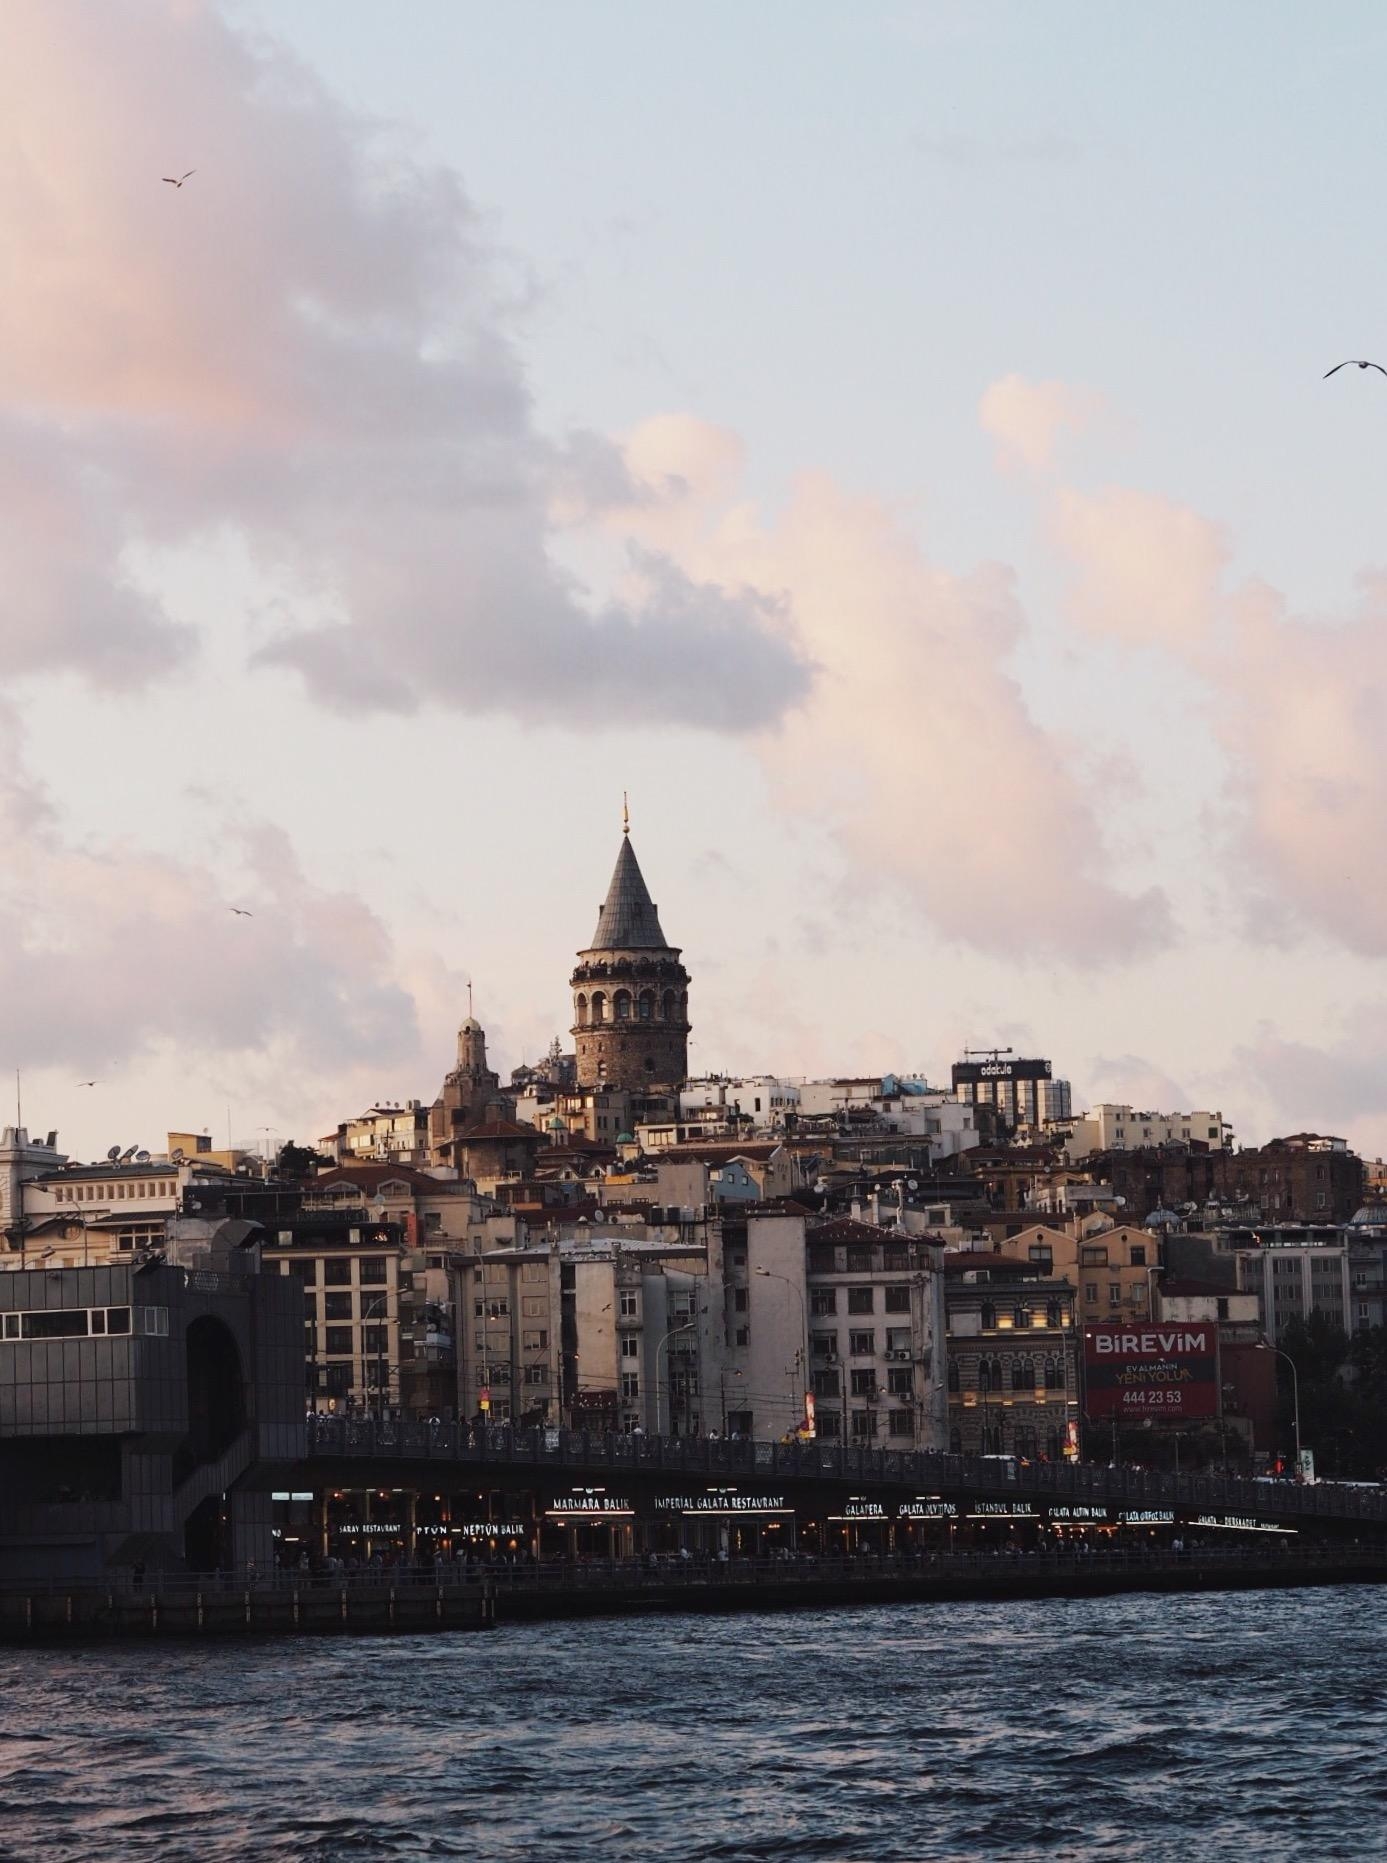 istanbul 🤍
#travelchallenge #städtetrip 